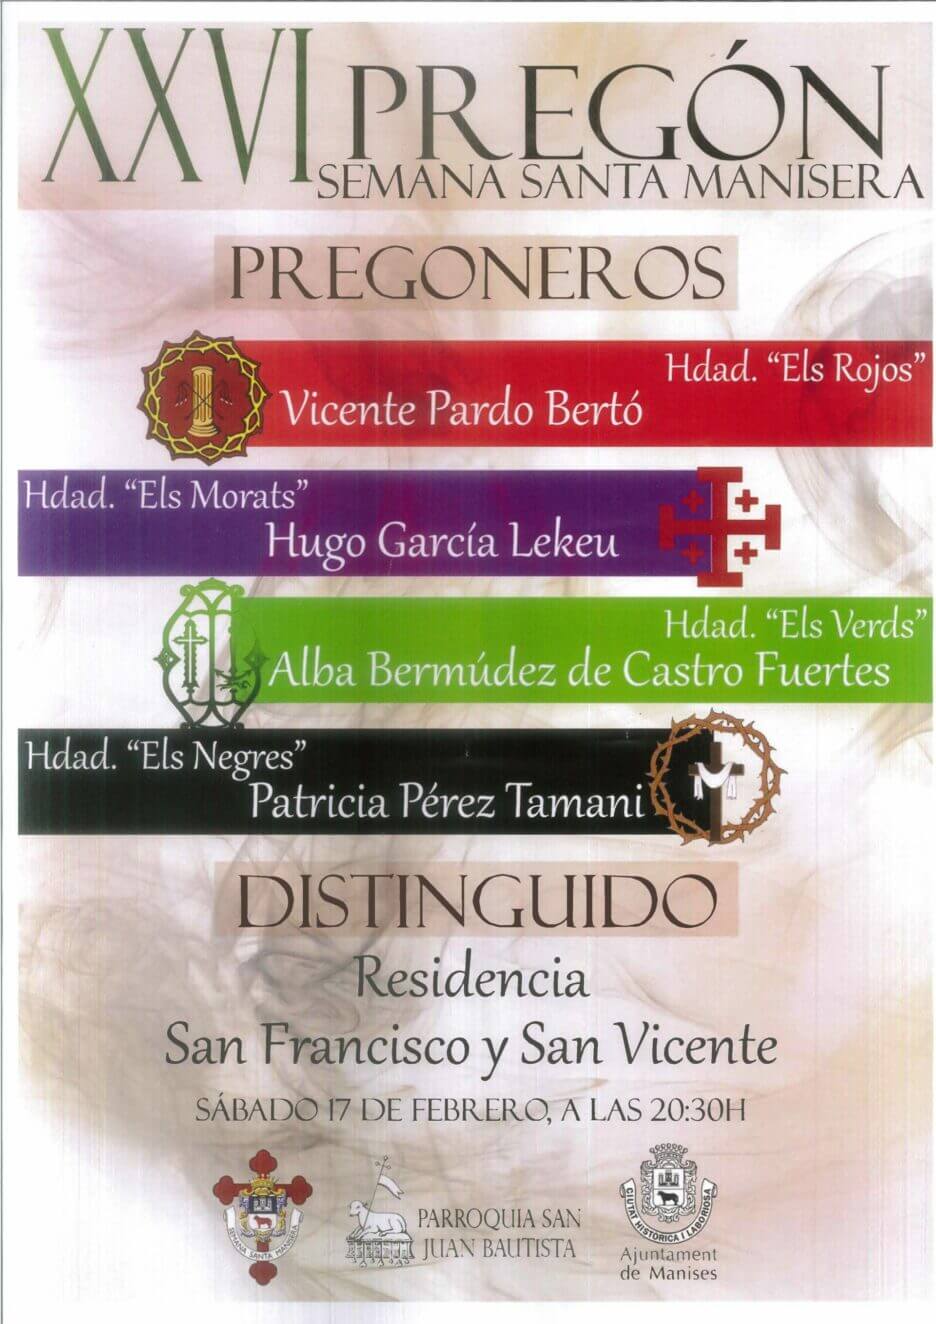 Residencia San Francisco Y San Vicente - Reconocimiento De La Junta De Hermandades De La Semana Santa Manisera